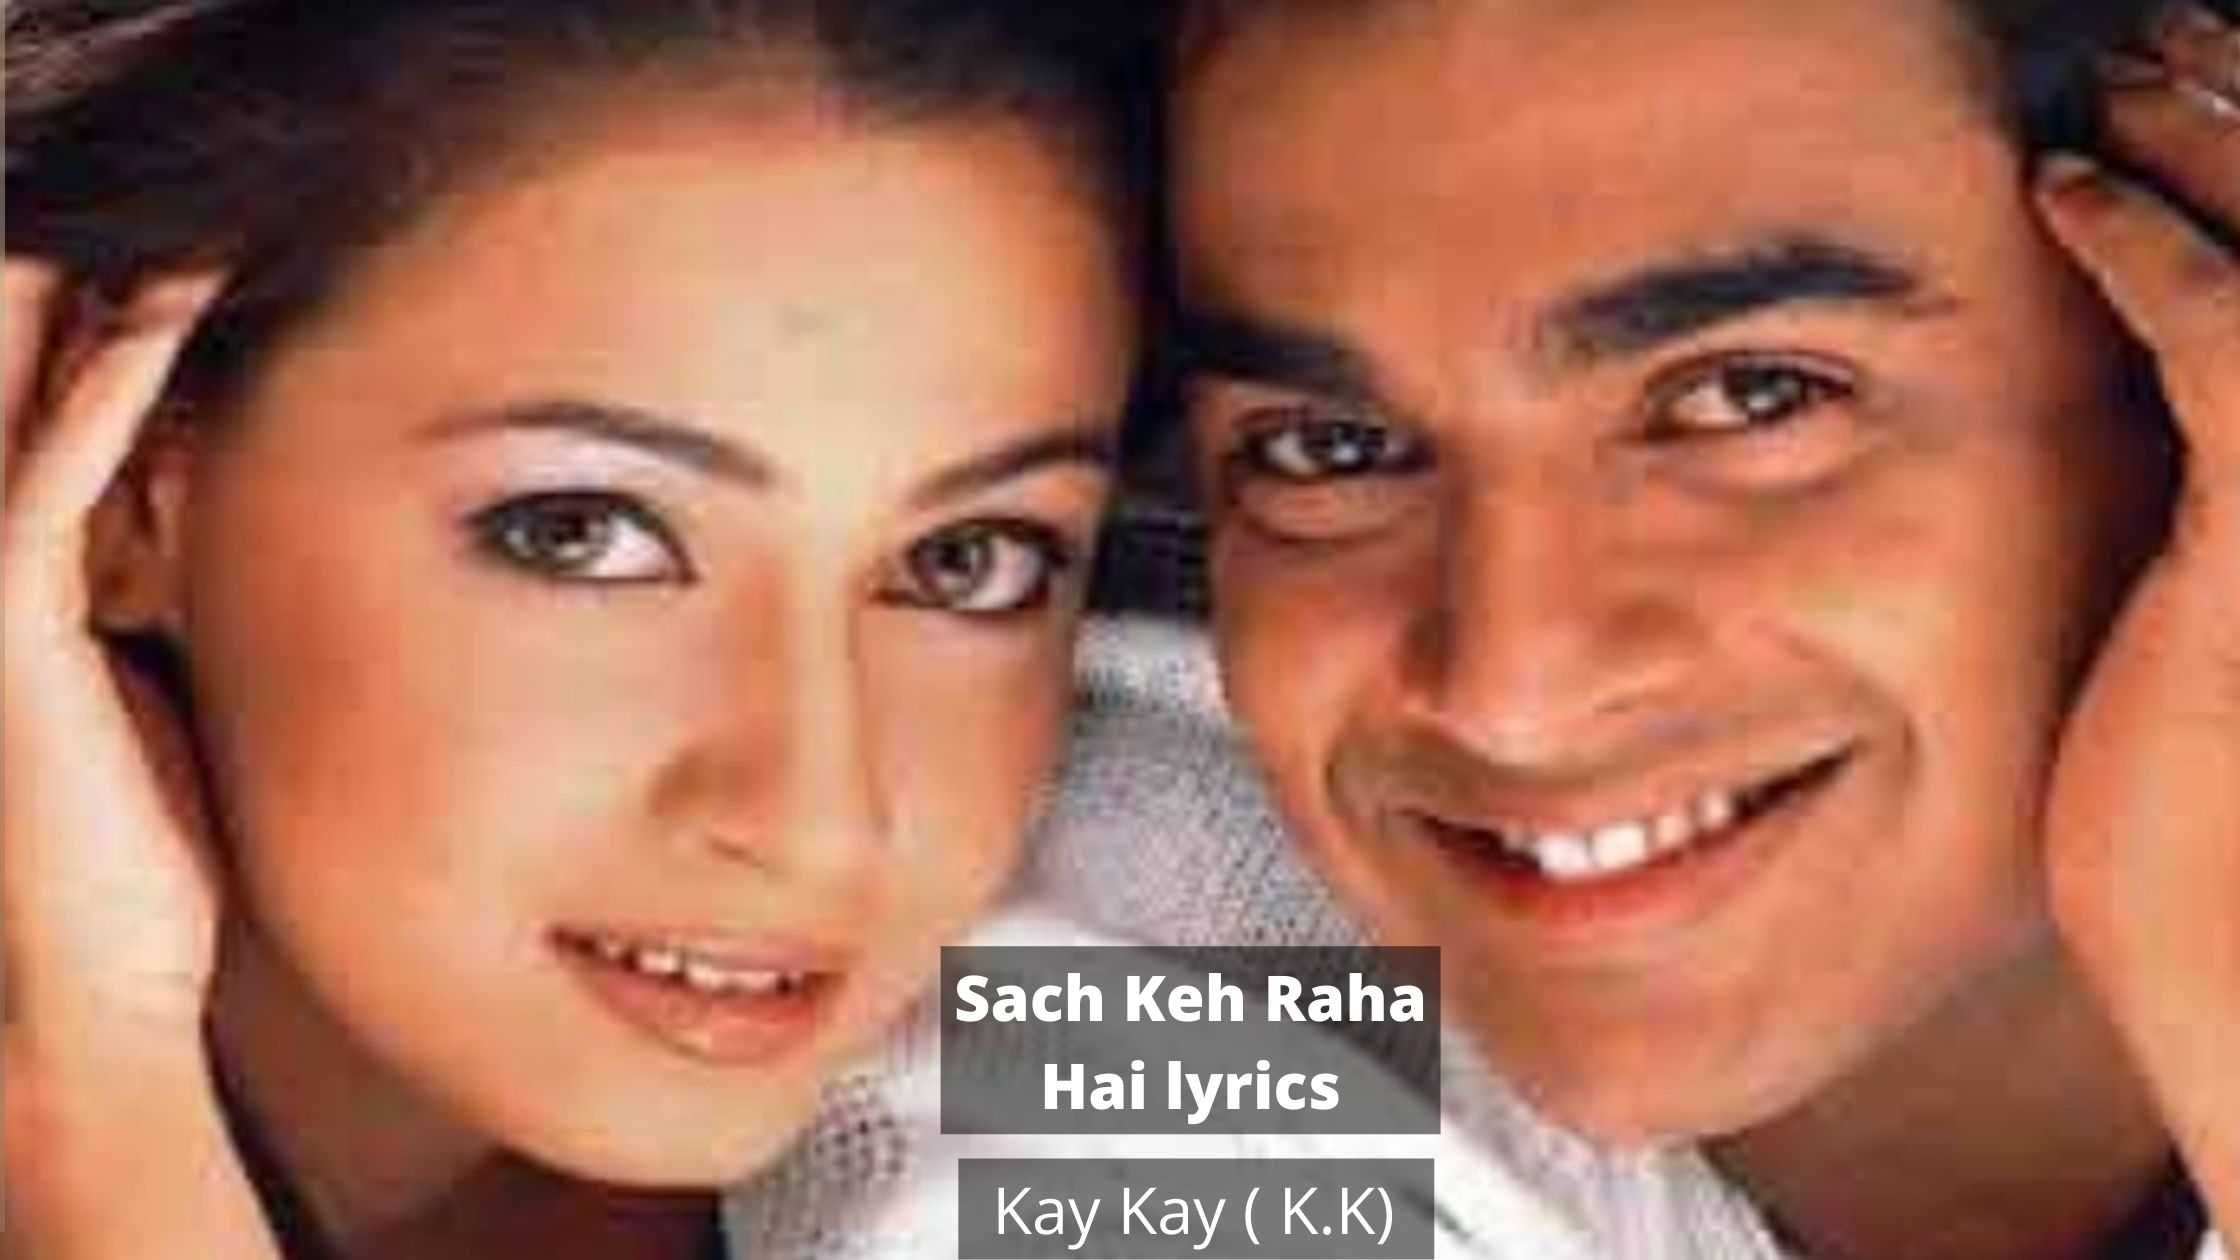 Sach Keh Raha Hai lyrics in Hindi, English